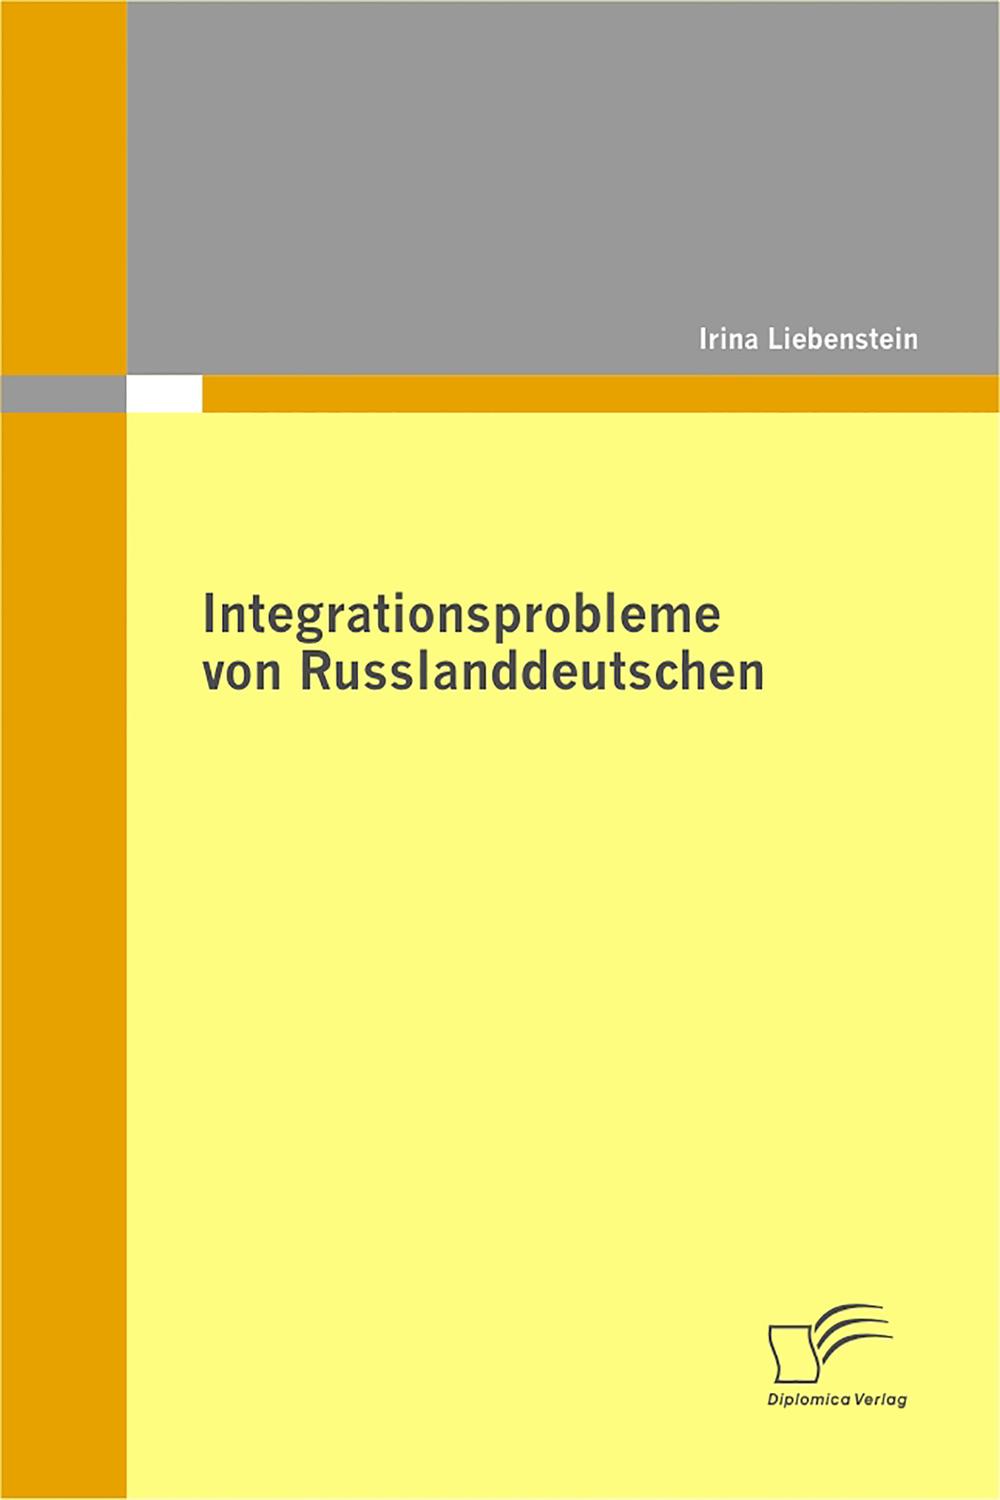 Integrationsprobleme von Russlanddeutschen - Irina Liebenstein